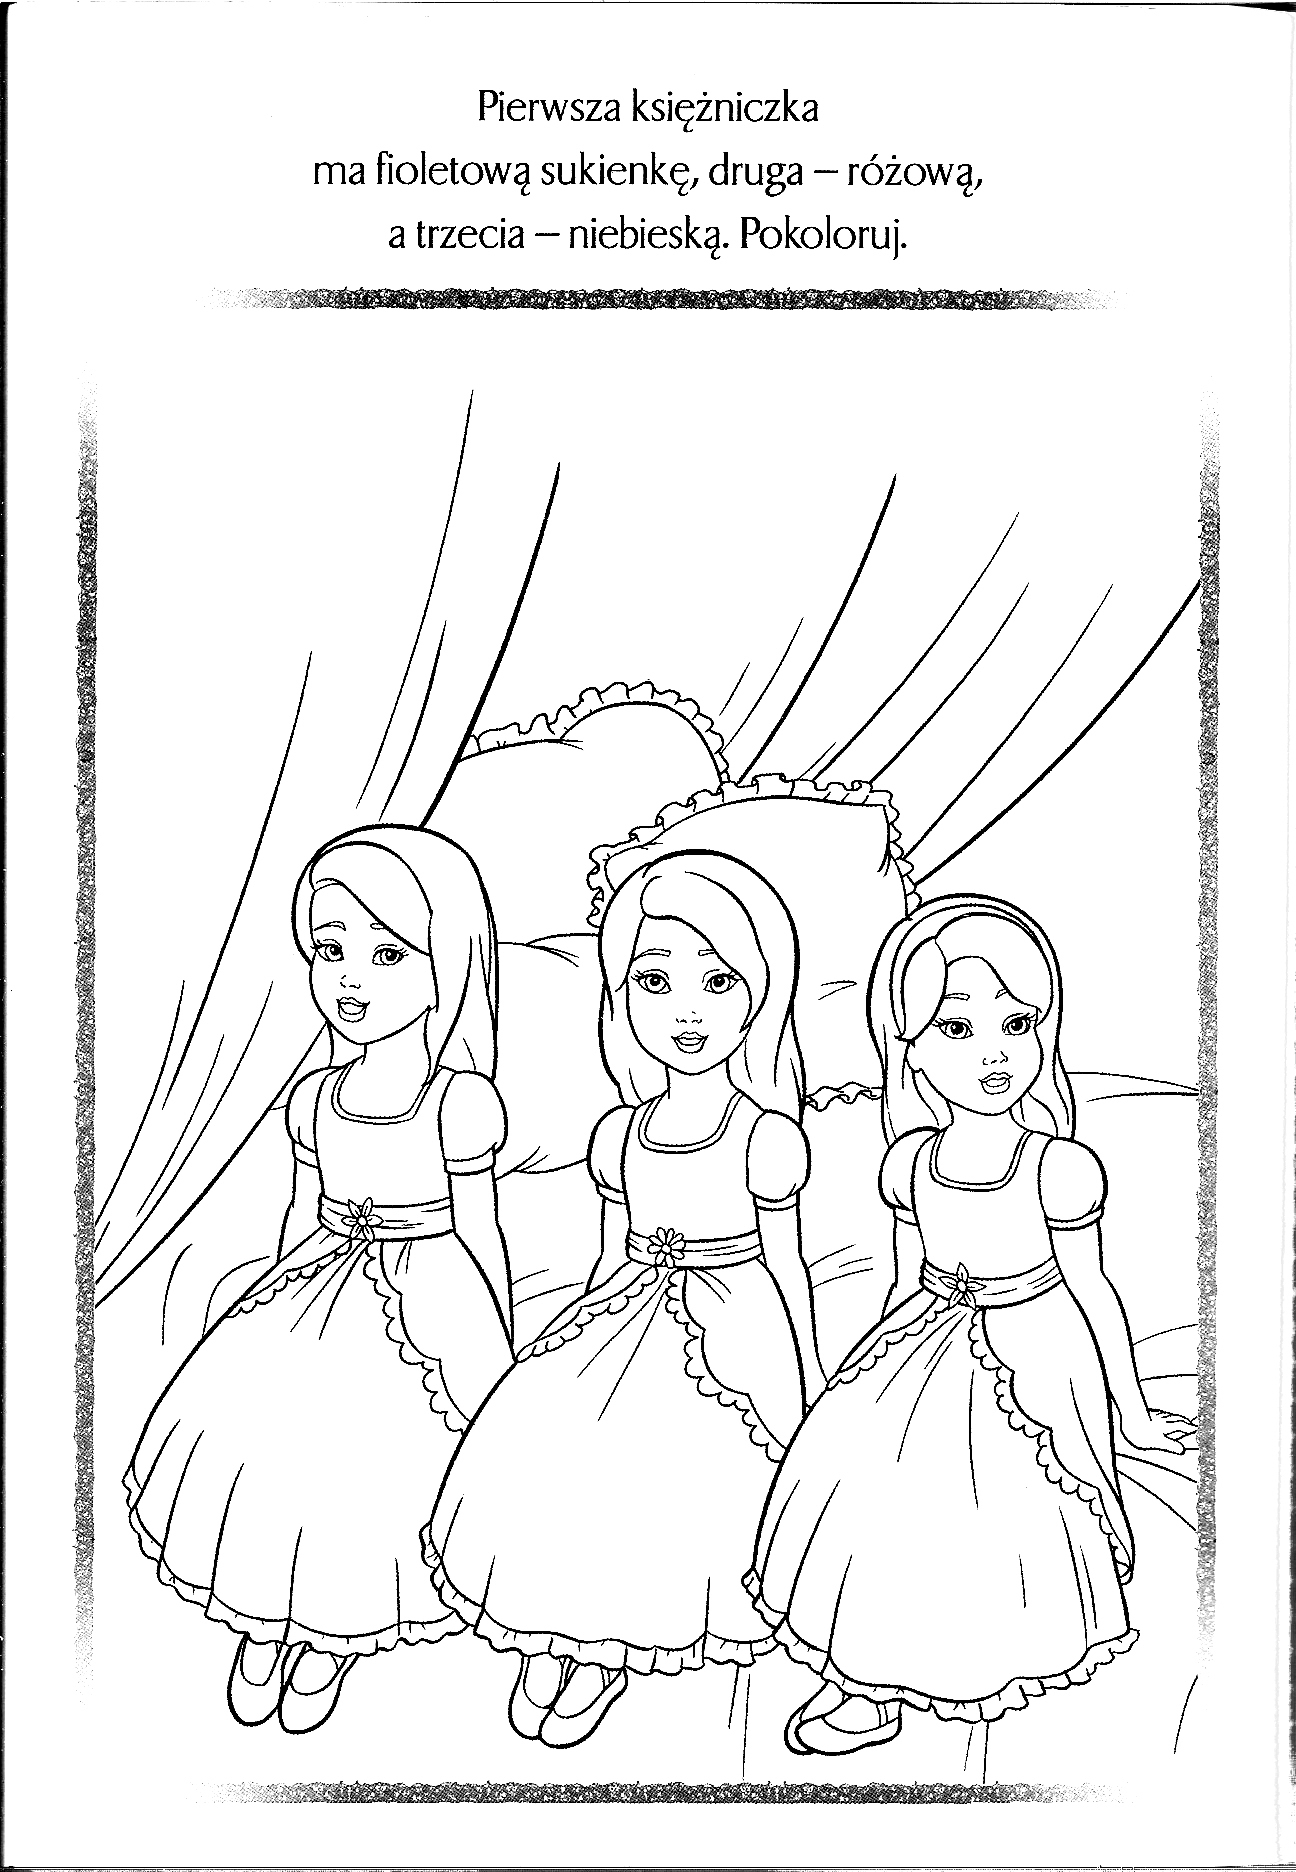 Kolorowanka księżniczka trzy małe księżniczki siedzą w ozdobnych sukniach na łóżku królewskim